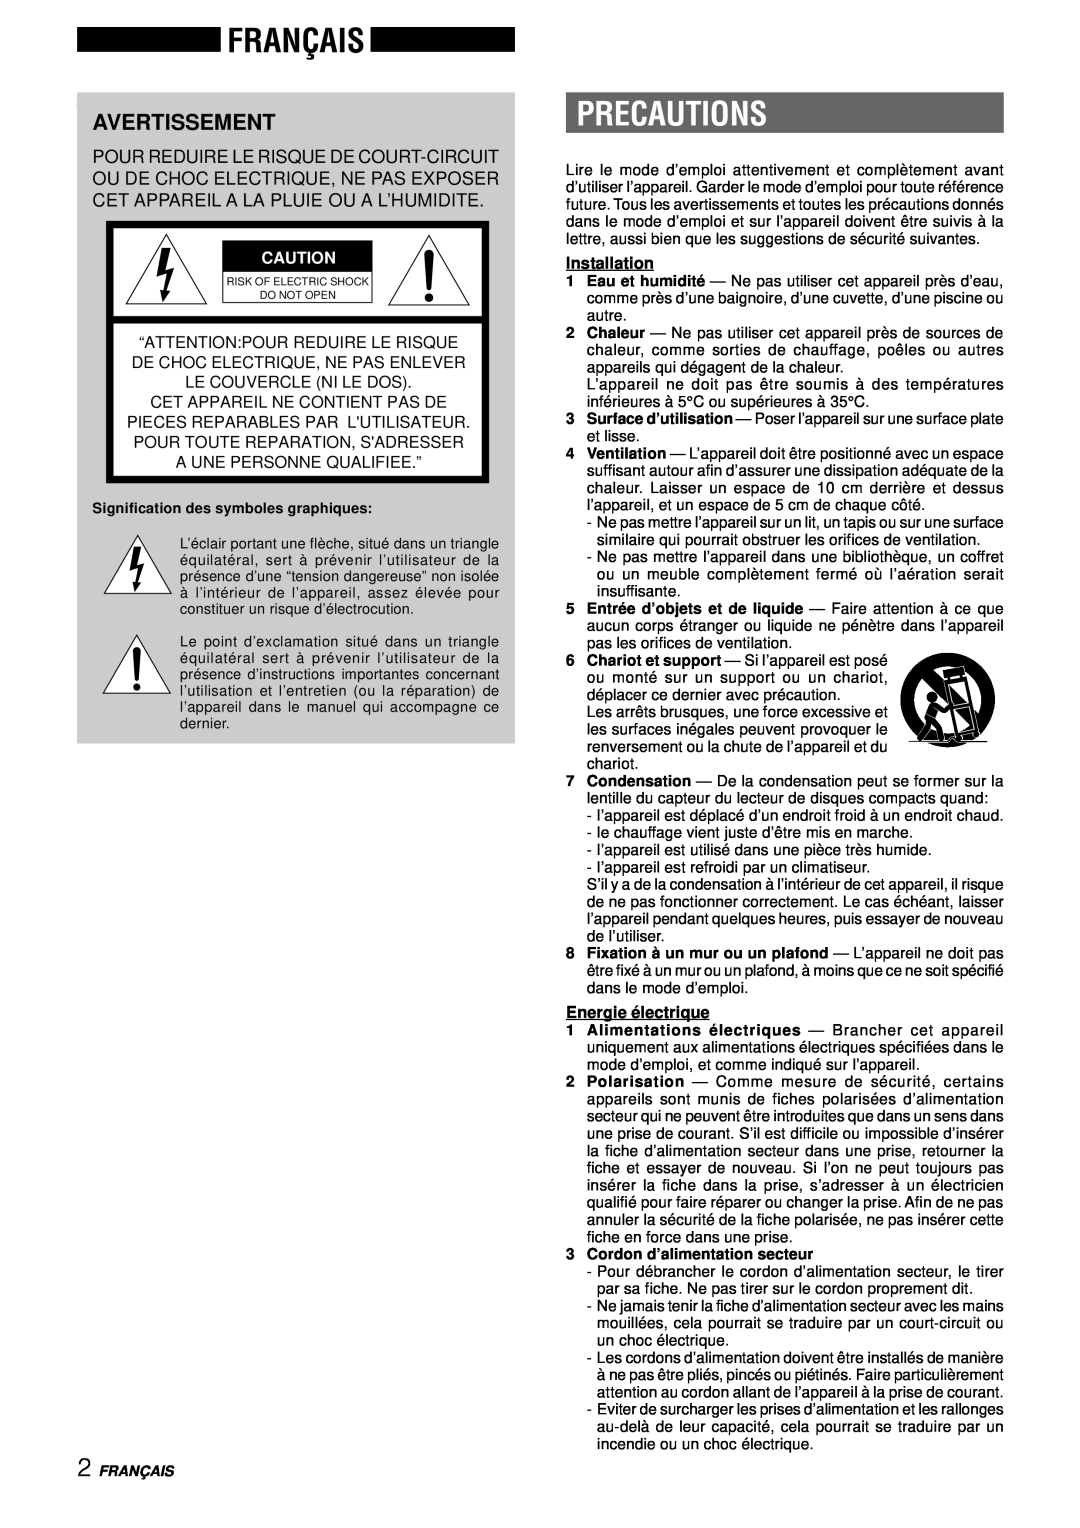 Aiwa NSX-DS8 Français, Avertissement, Precautions, “Attention Pour Reduire Le Risque, De Choc Electrique, Ne Pas Enlever 